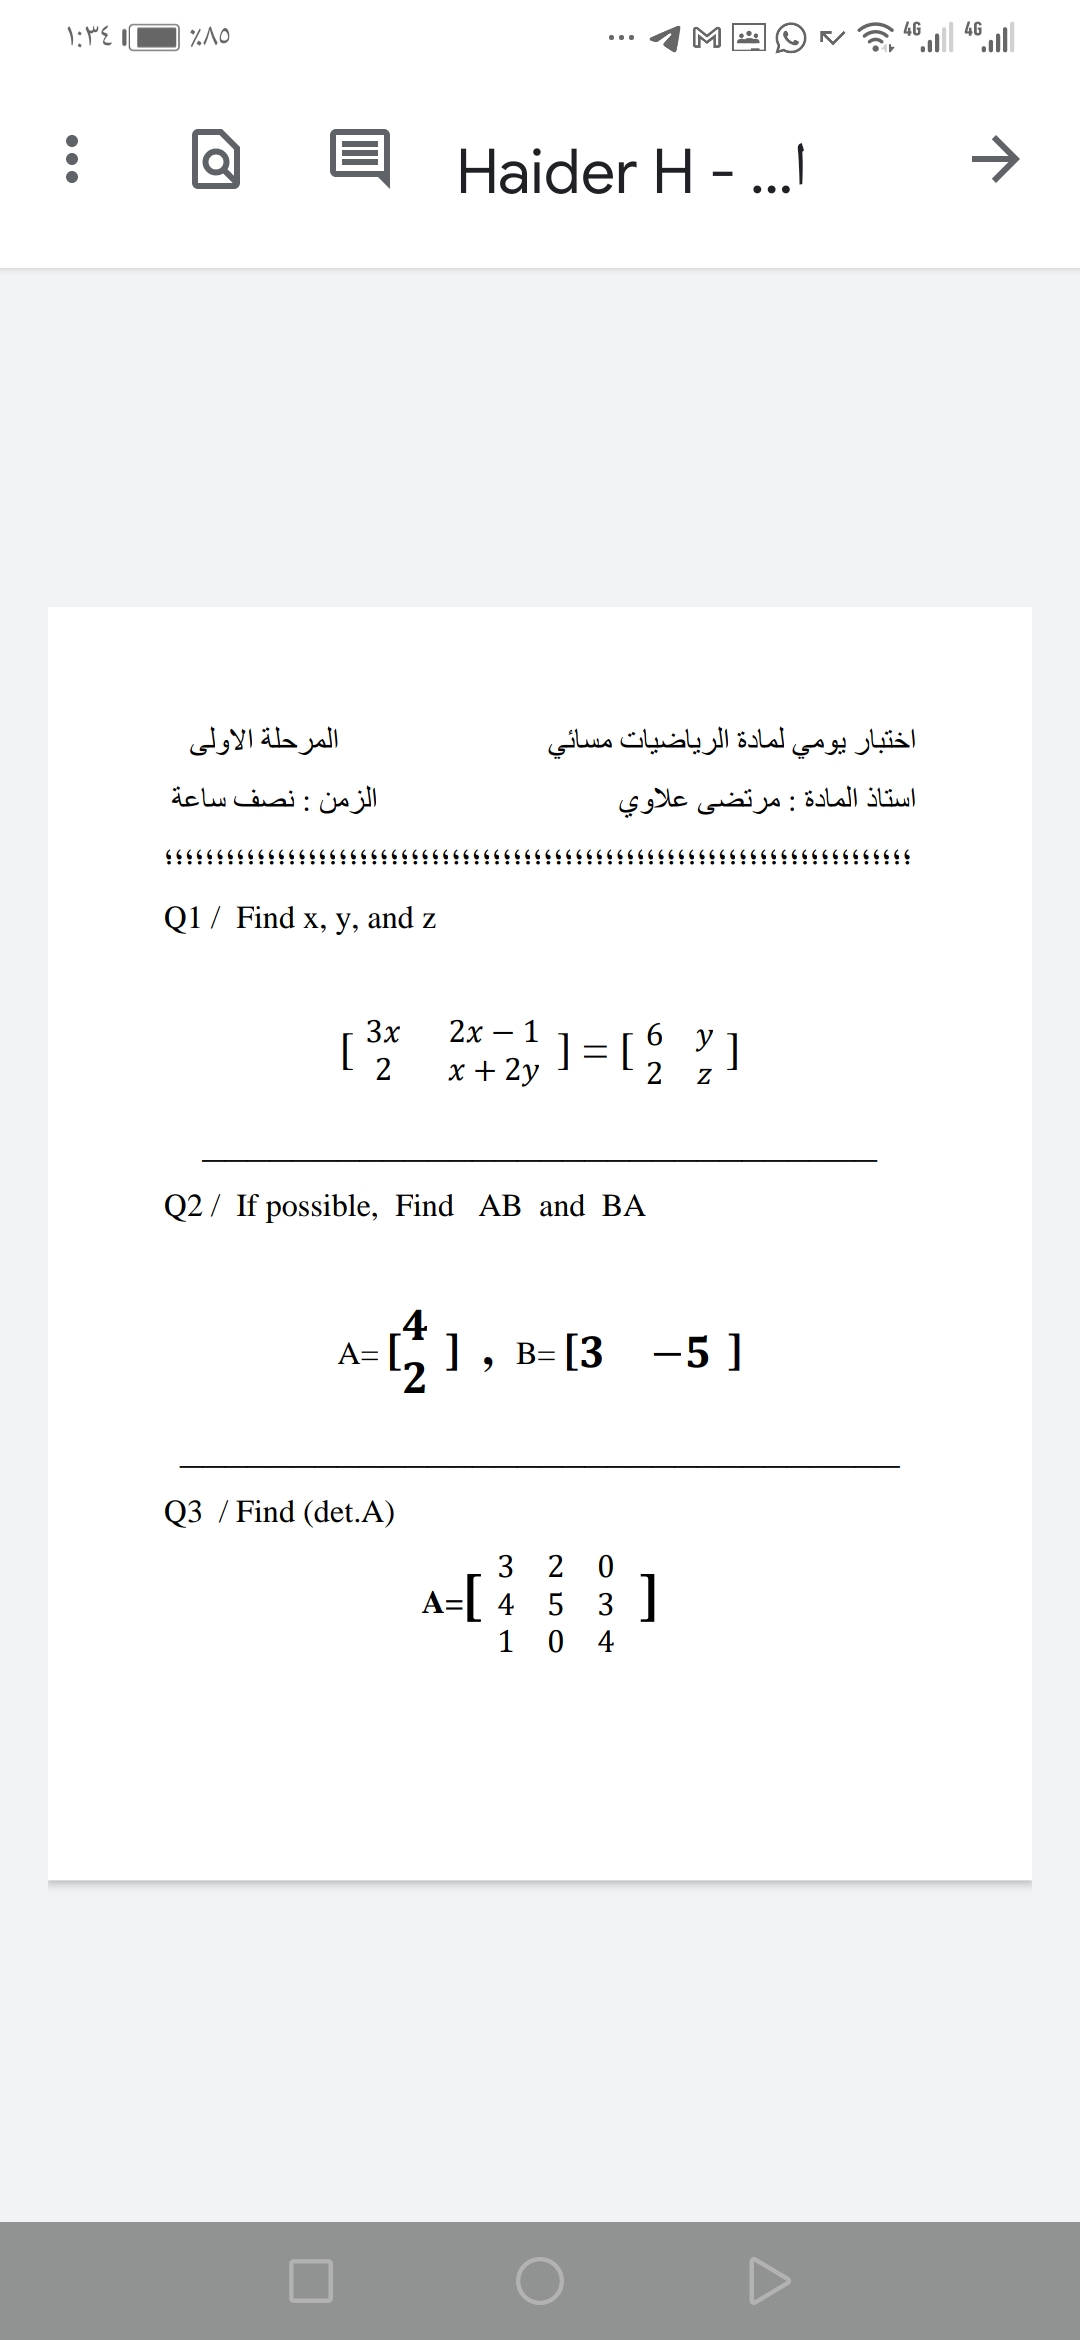 4G
4G
Haider H -.
•..
المرحلة الأولى
المادة الرياضيات مسائي
اختبار يومي
الزمن : نصف ساعة
أستاذ المادة : مرتضی علاوي
Q1 / Find x, y, and z
3x
[
2х— 1
6.
y
]
]= [
2
x + 2y
Q2 / If possible, Find AB and BA
4
A=
2.
-71, в-[3 —5 ]
-5]
Q3 / Find (det.A)
3 2 0
A=[ 4 5 3 ]
1 0
4
